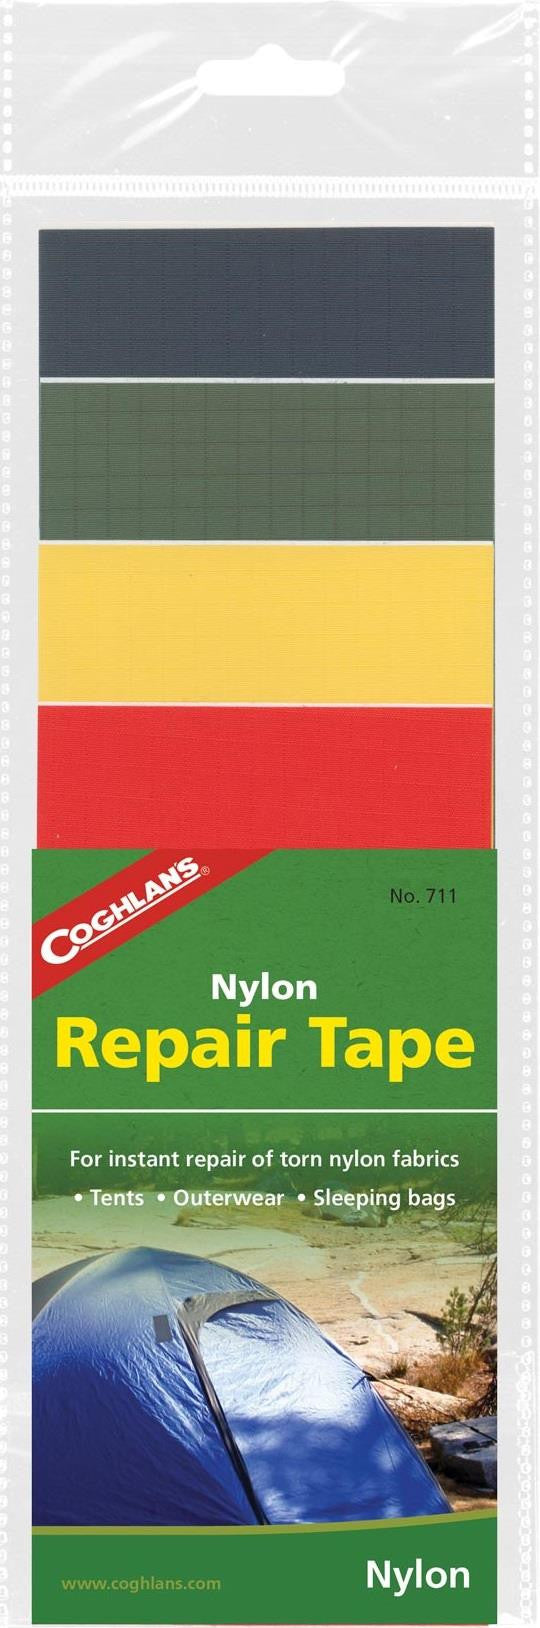 Coghlan's Vinyl Repair Tape